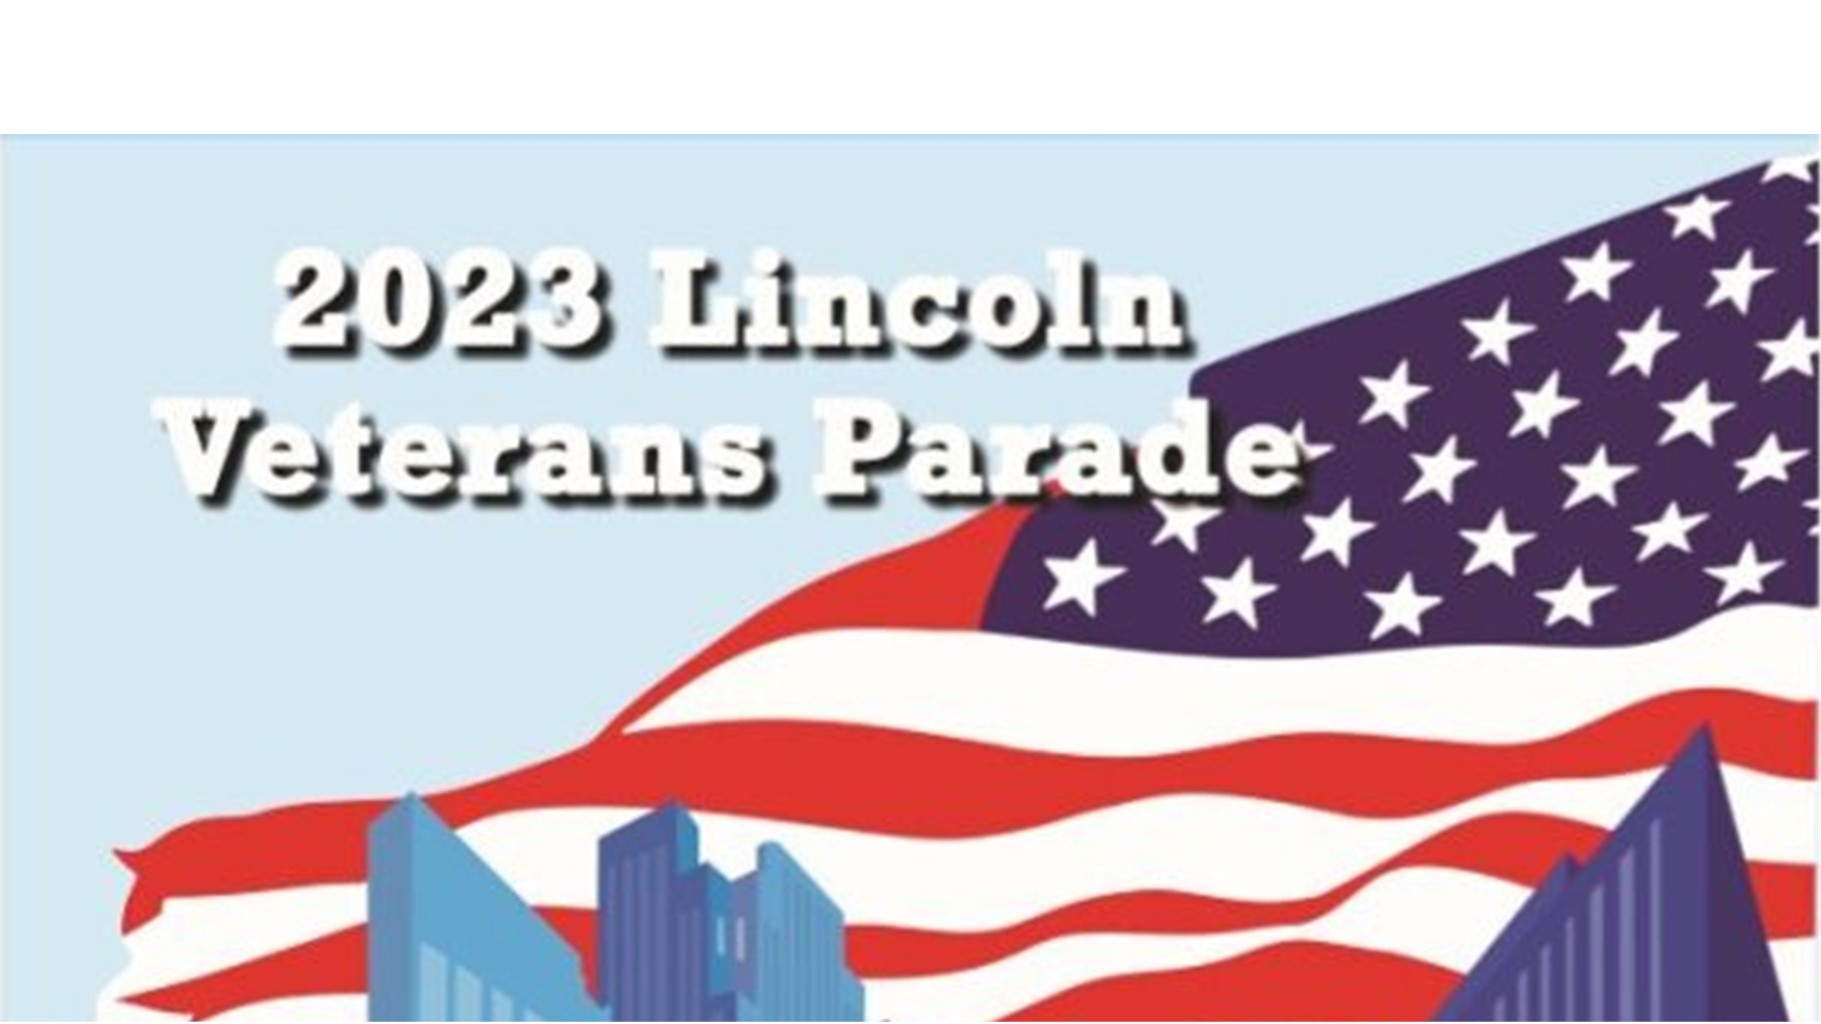 The 2023 Lincoln Nebraska Parade: Celebrating Veterans in Business